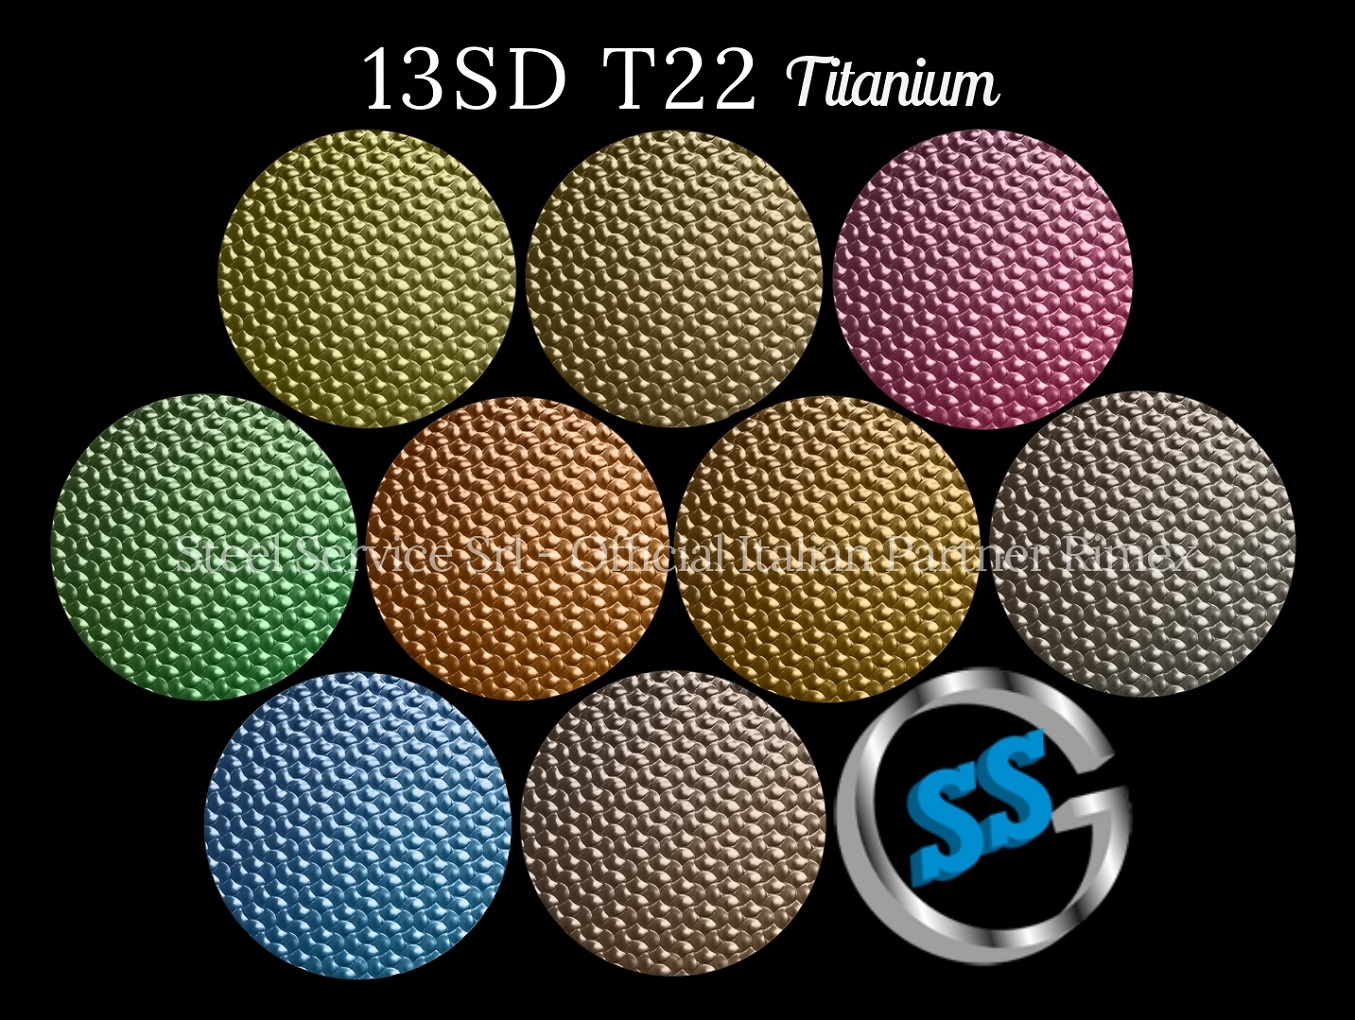 Lamiere bugnate colorate, Palette varianti colorate inox T22 Titanium delle lamiere inox 13SD, inox rigidizzato 13SD